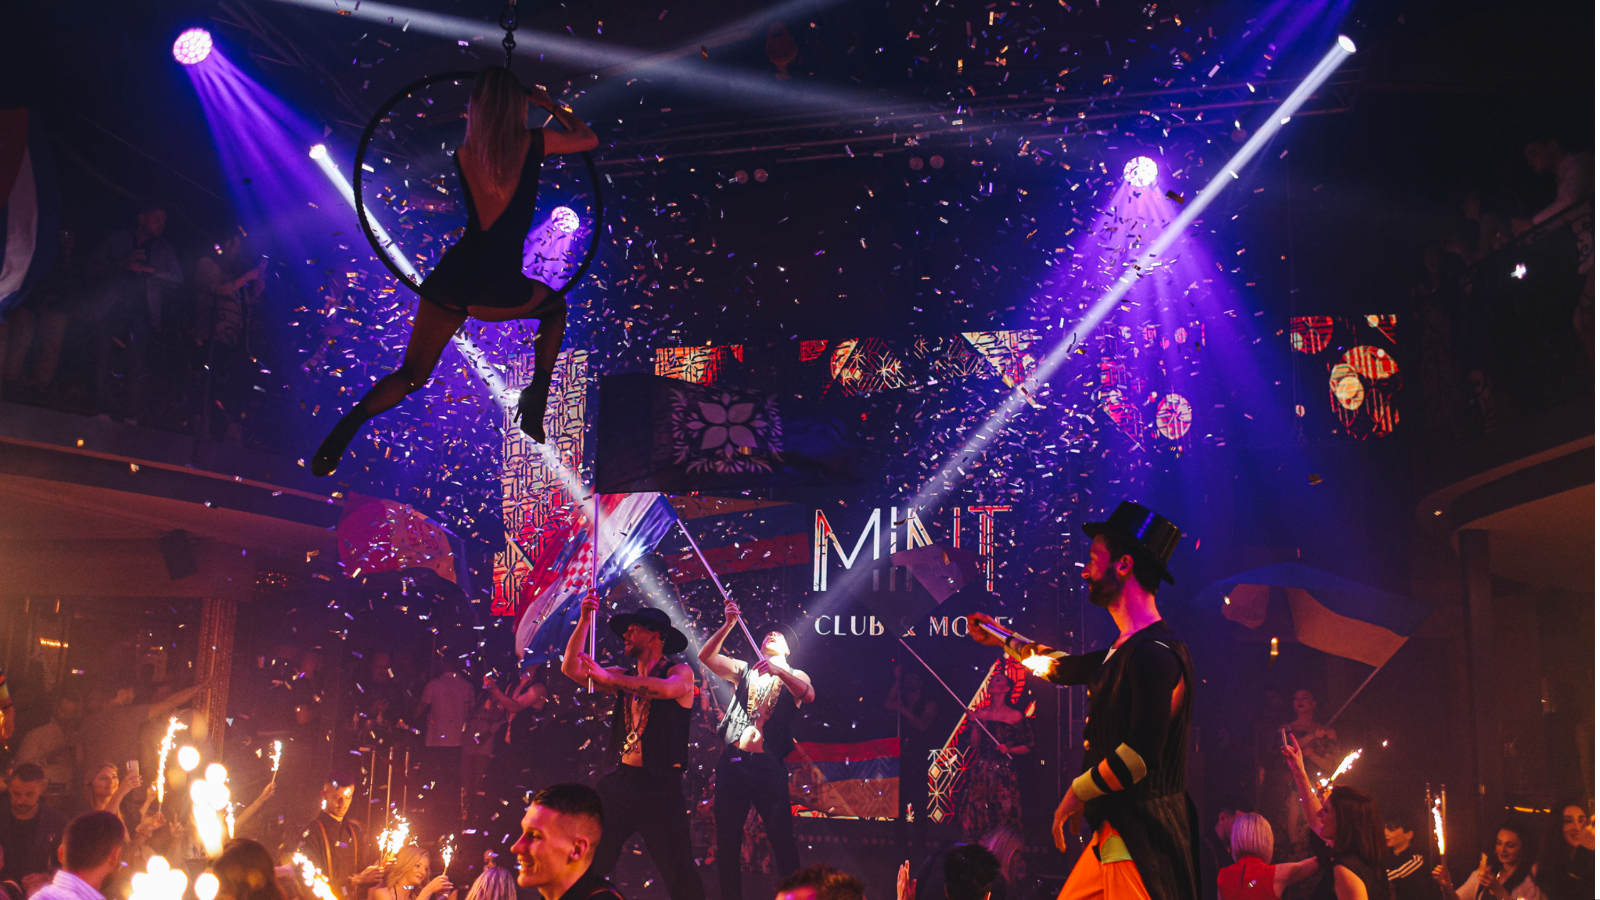 Mint club & more svojim je cabaretom Zagreb stavio na kartu zabave uz velike svjetske metropole